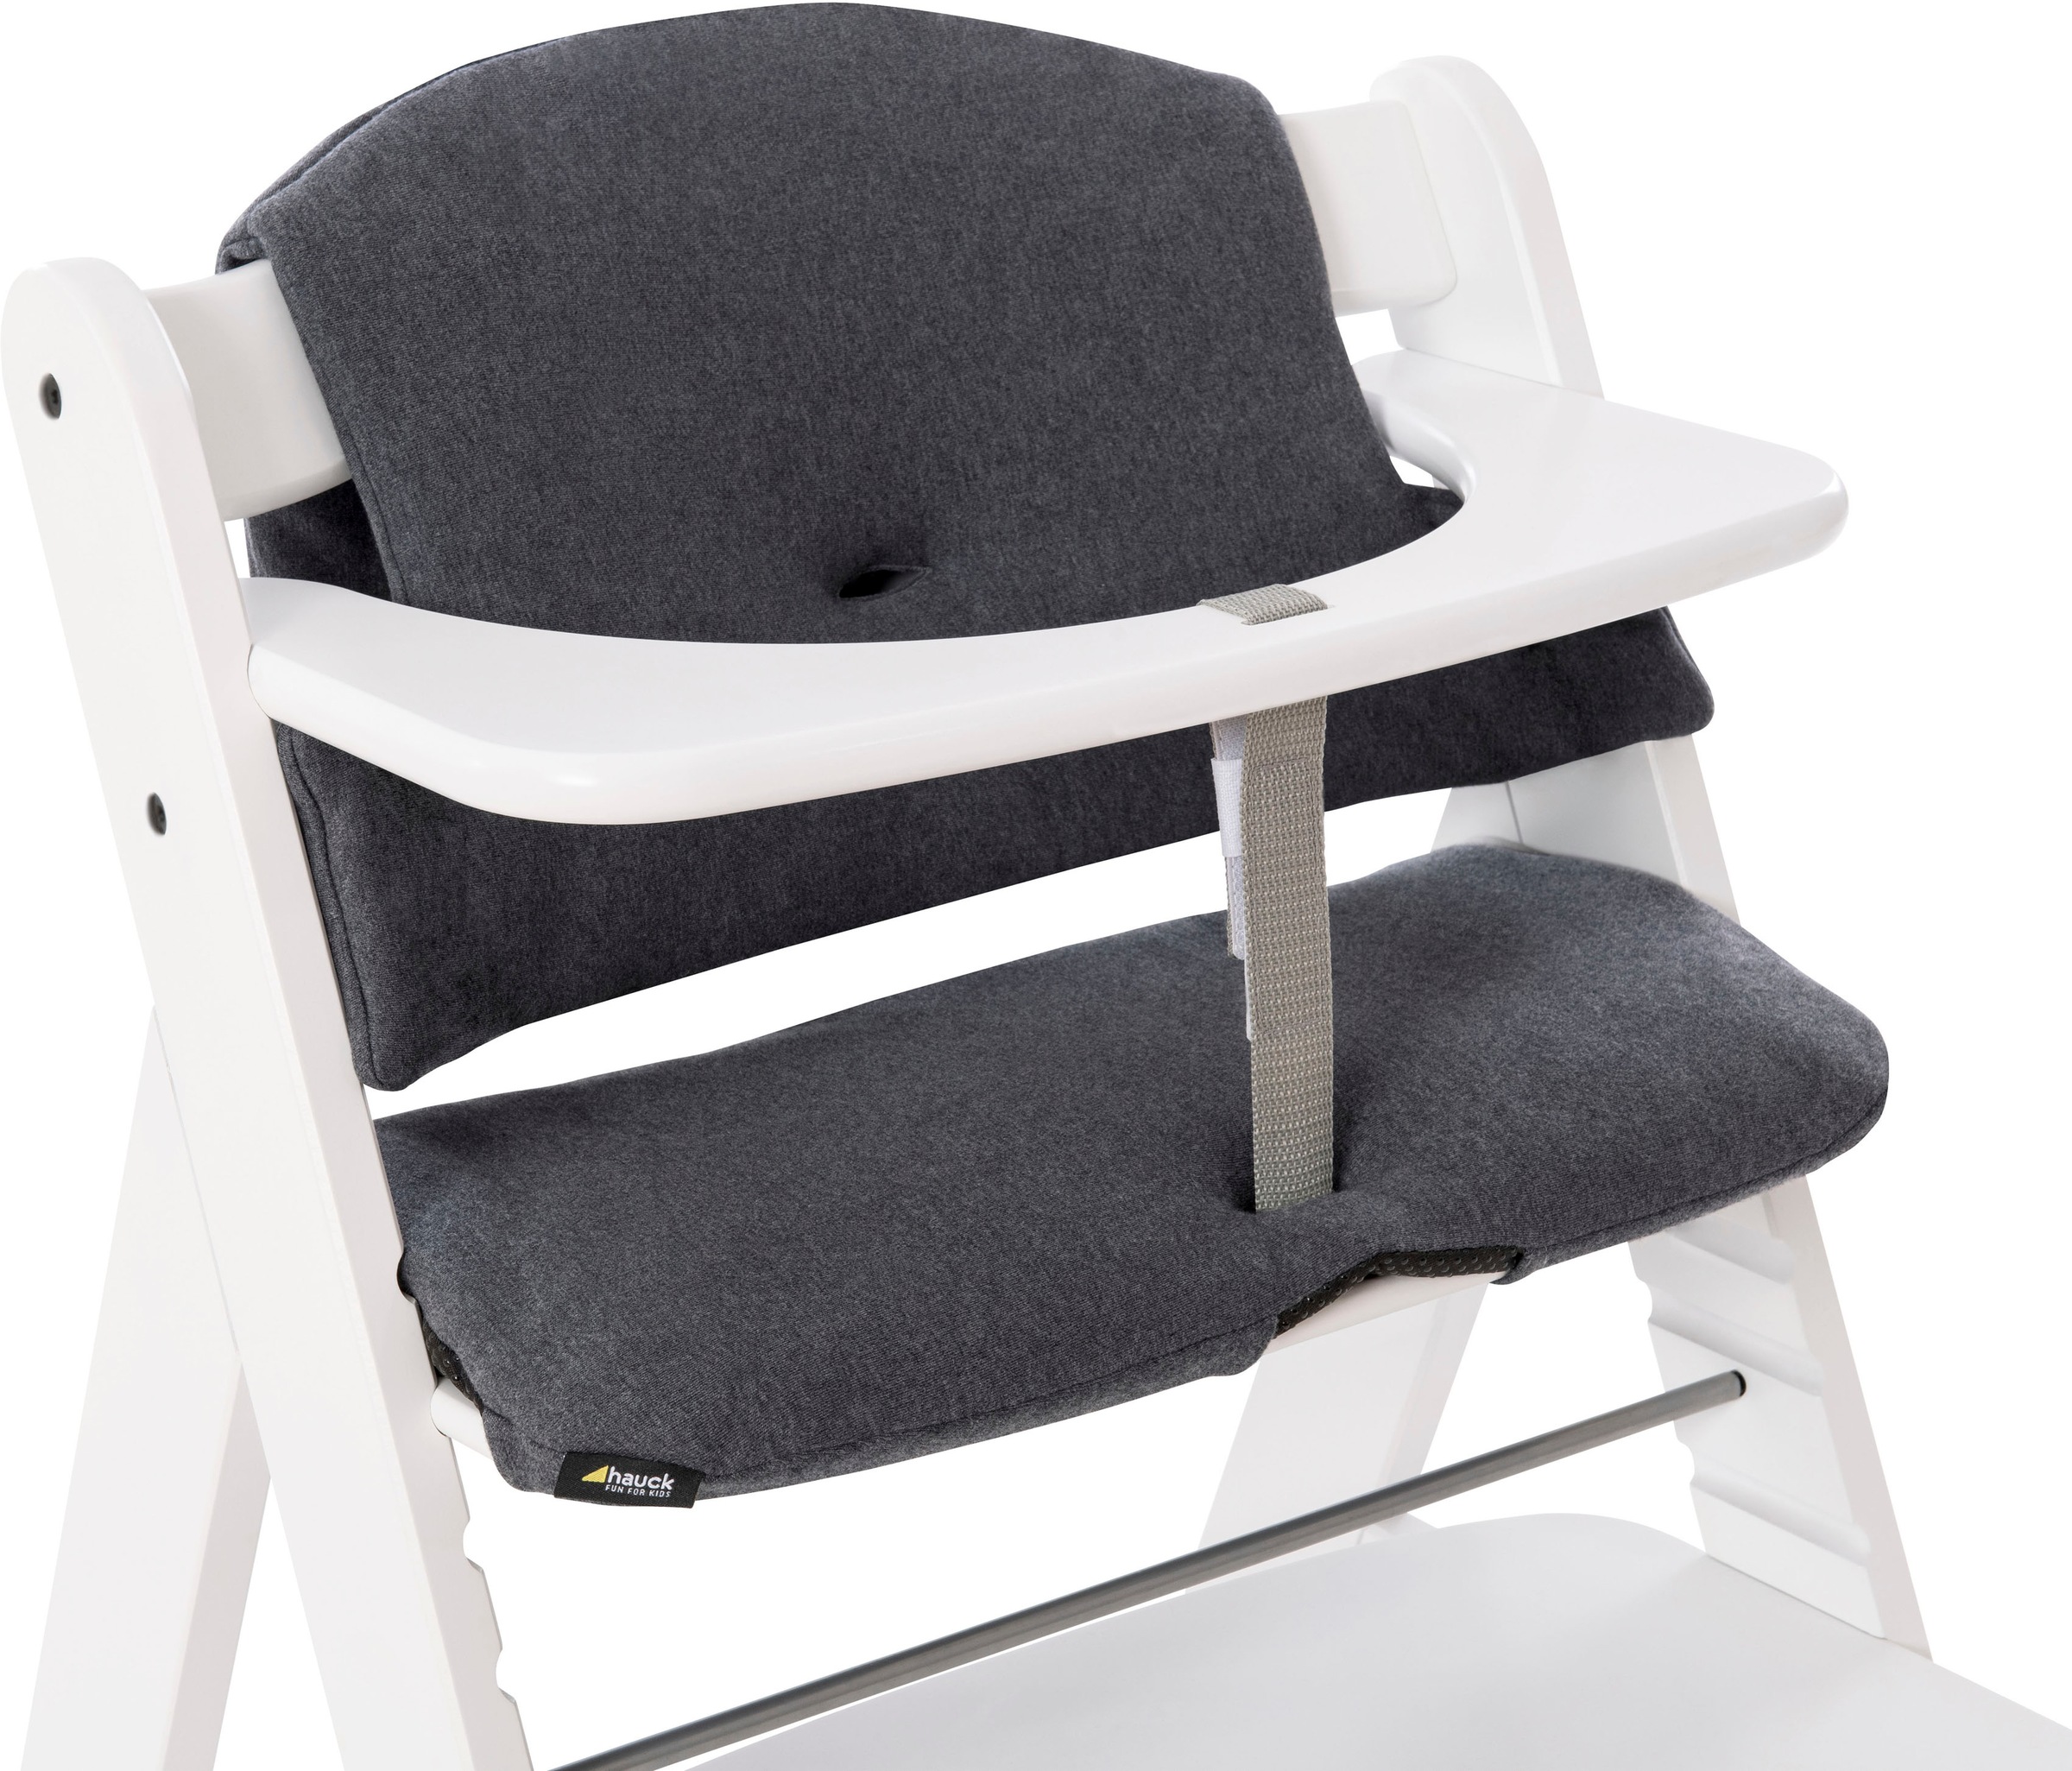 Hauck Kinder-Sitzauflage »Select, jersey charcoal«, für den ALPHA+ Holzhochstuhl und weitere Modelle